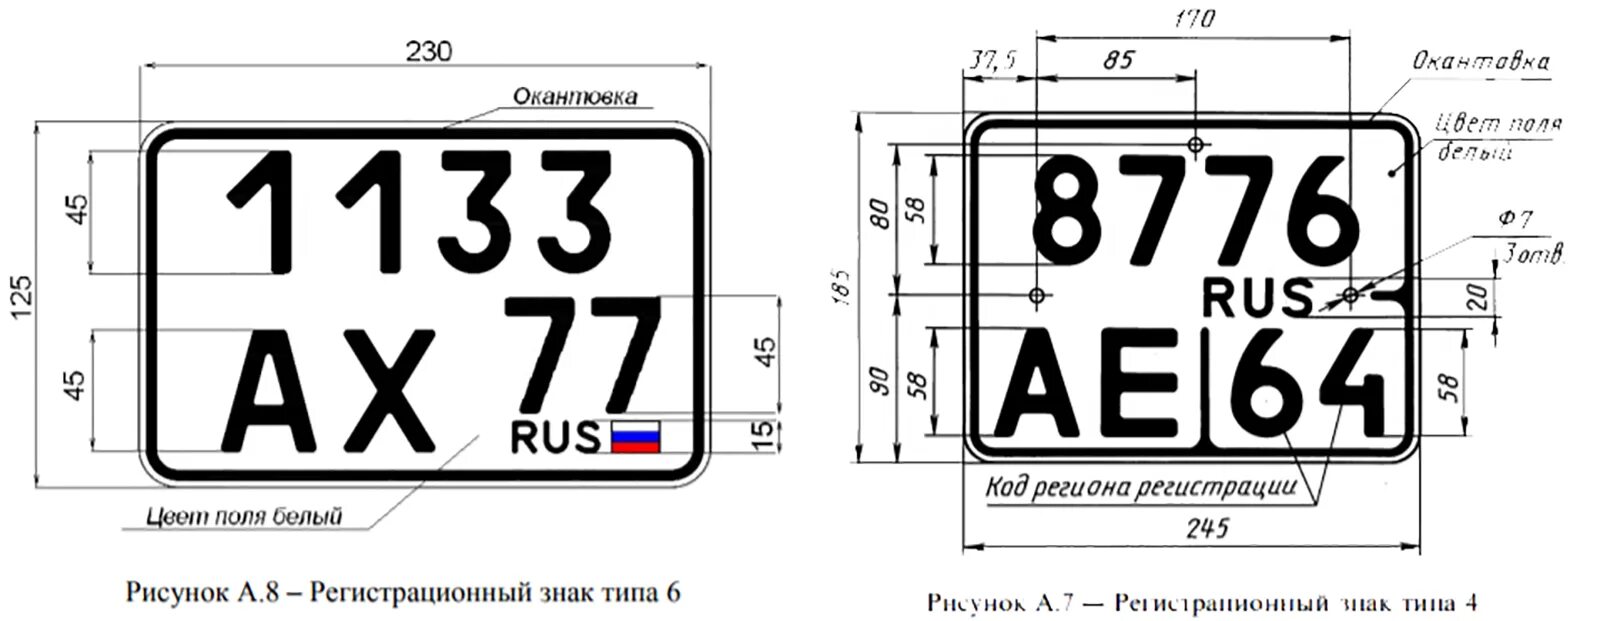 Гос номерной знак автомобиля размер. Размер номерного знака мотоцикла новый. Размеры гос номерного знака для мотоцикла. Габариты номерного знака автомобиля в России.